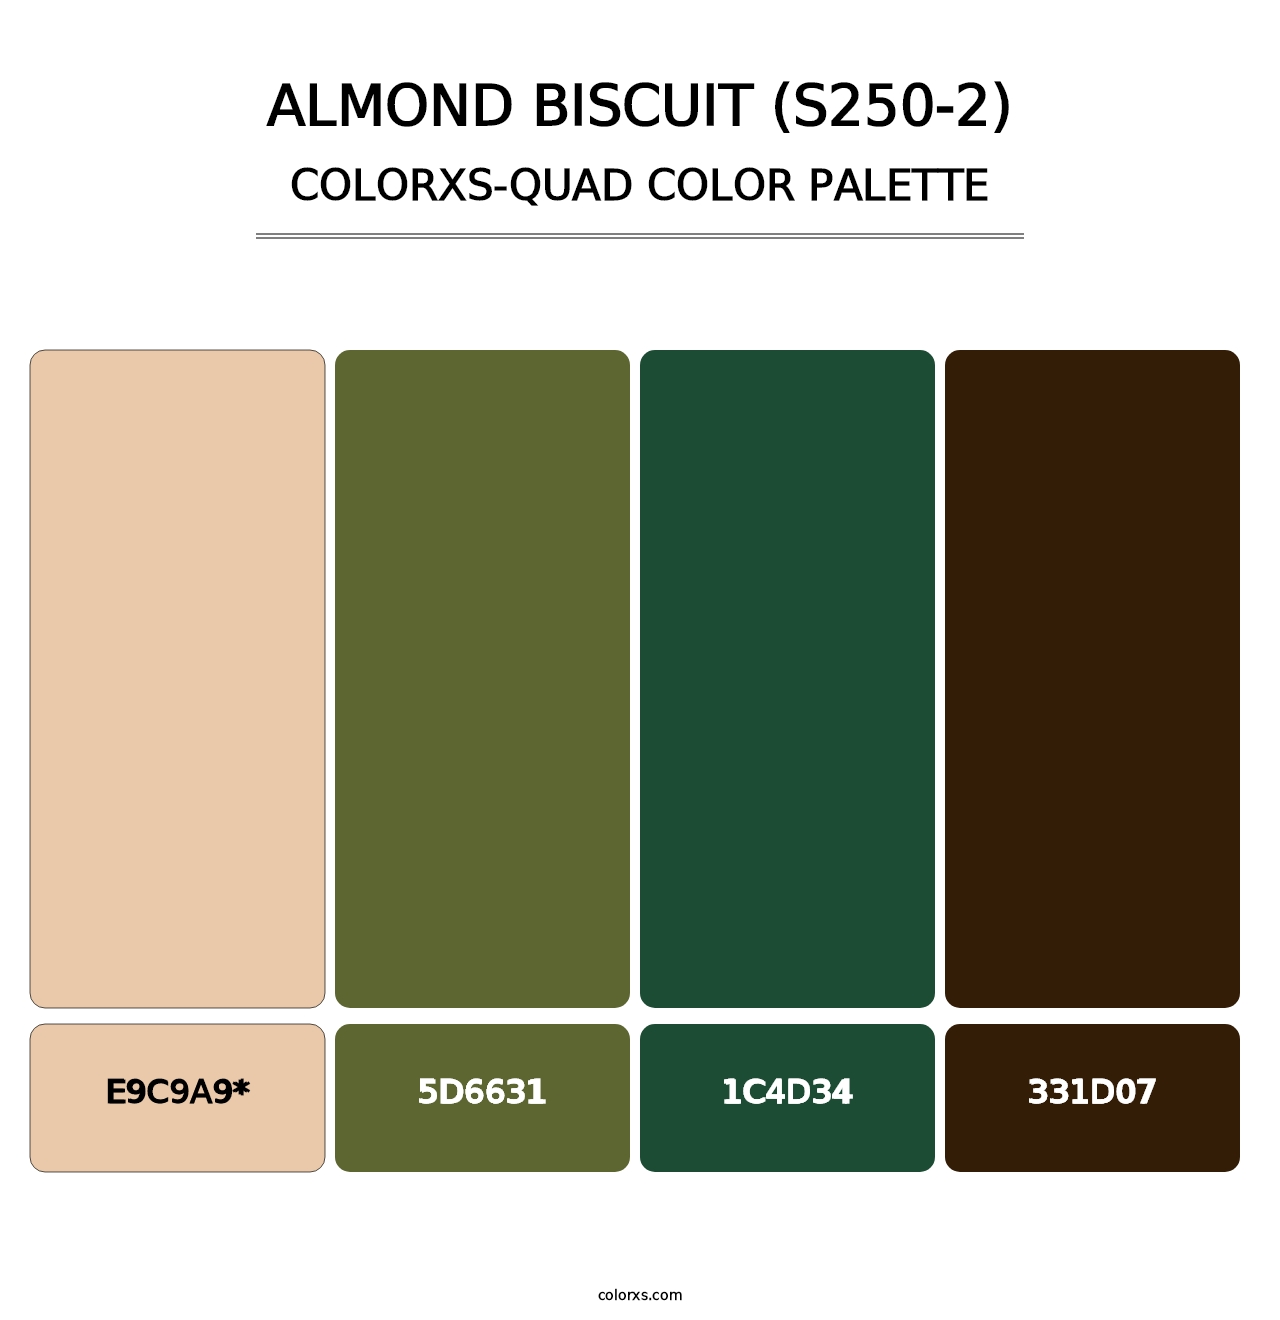 Almond Biscuit (S250-2) - Colorxs Quad Palette